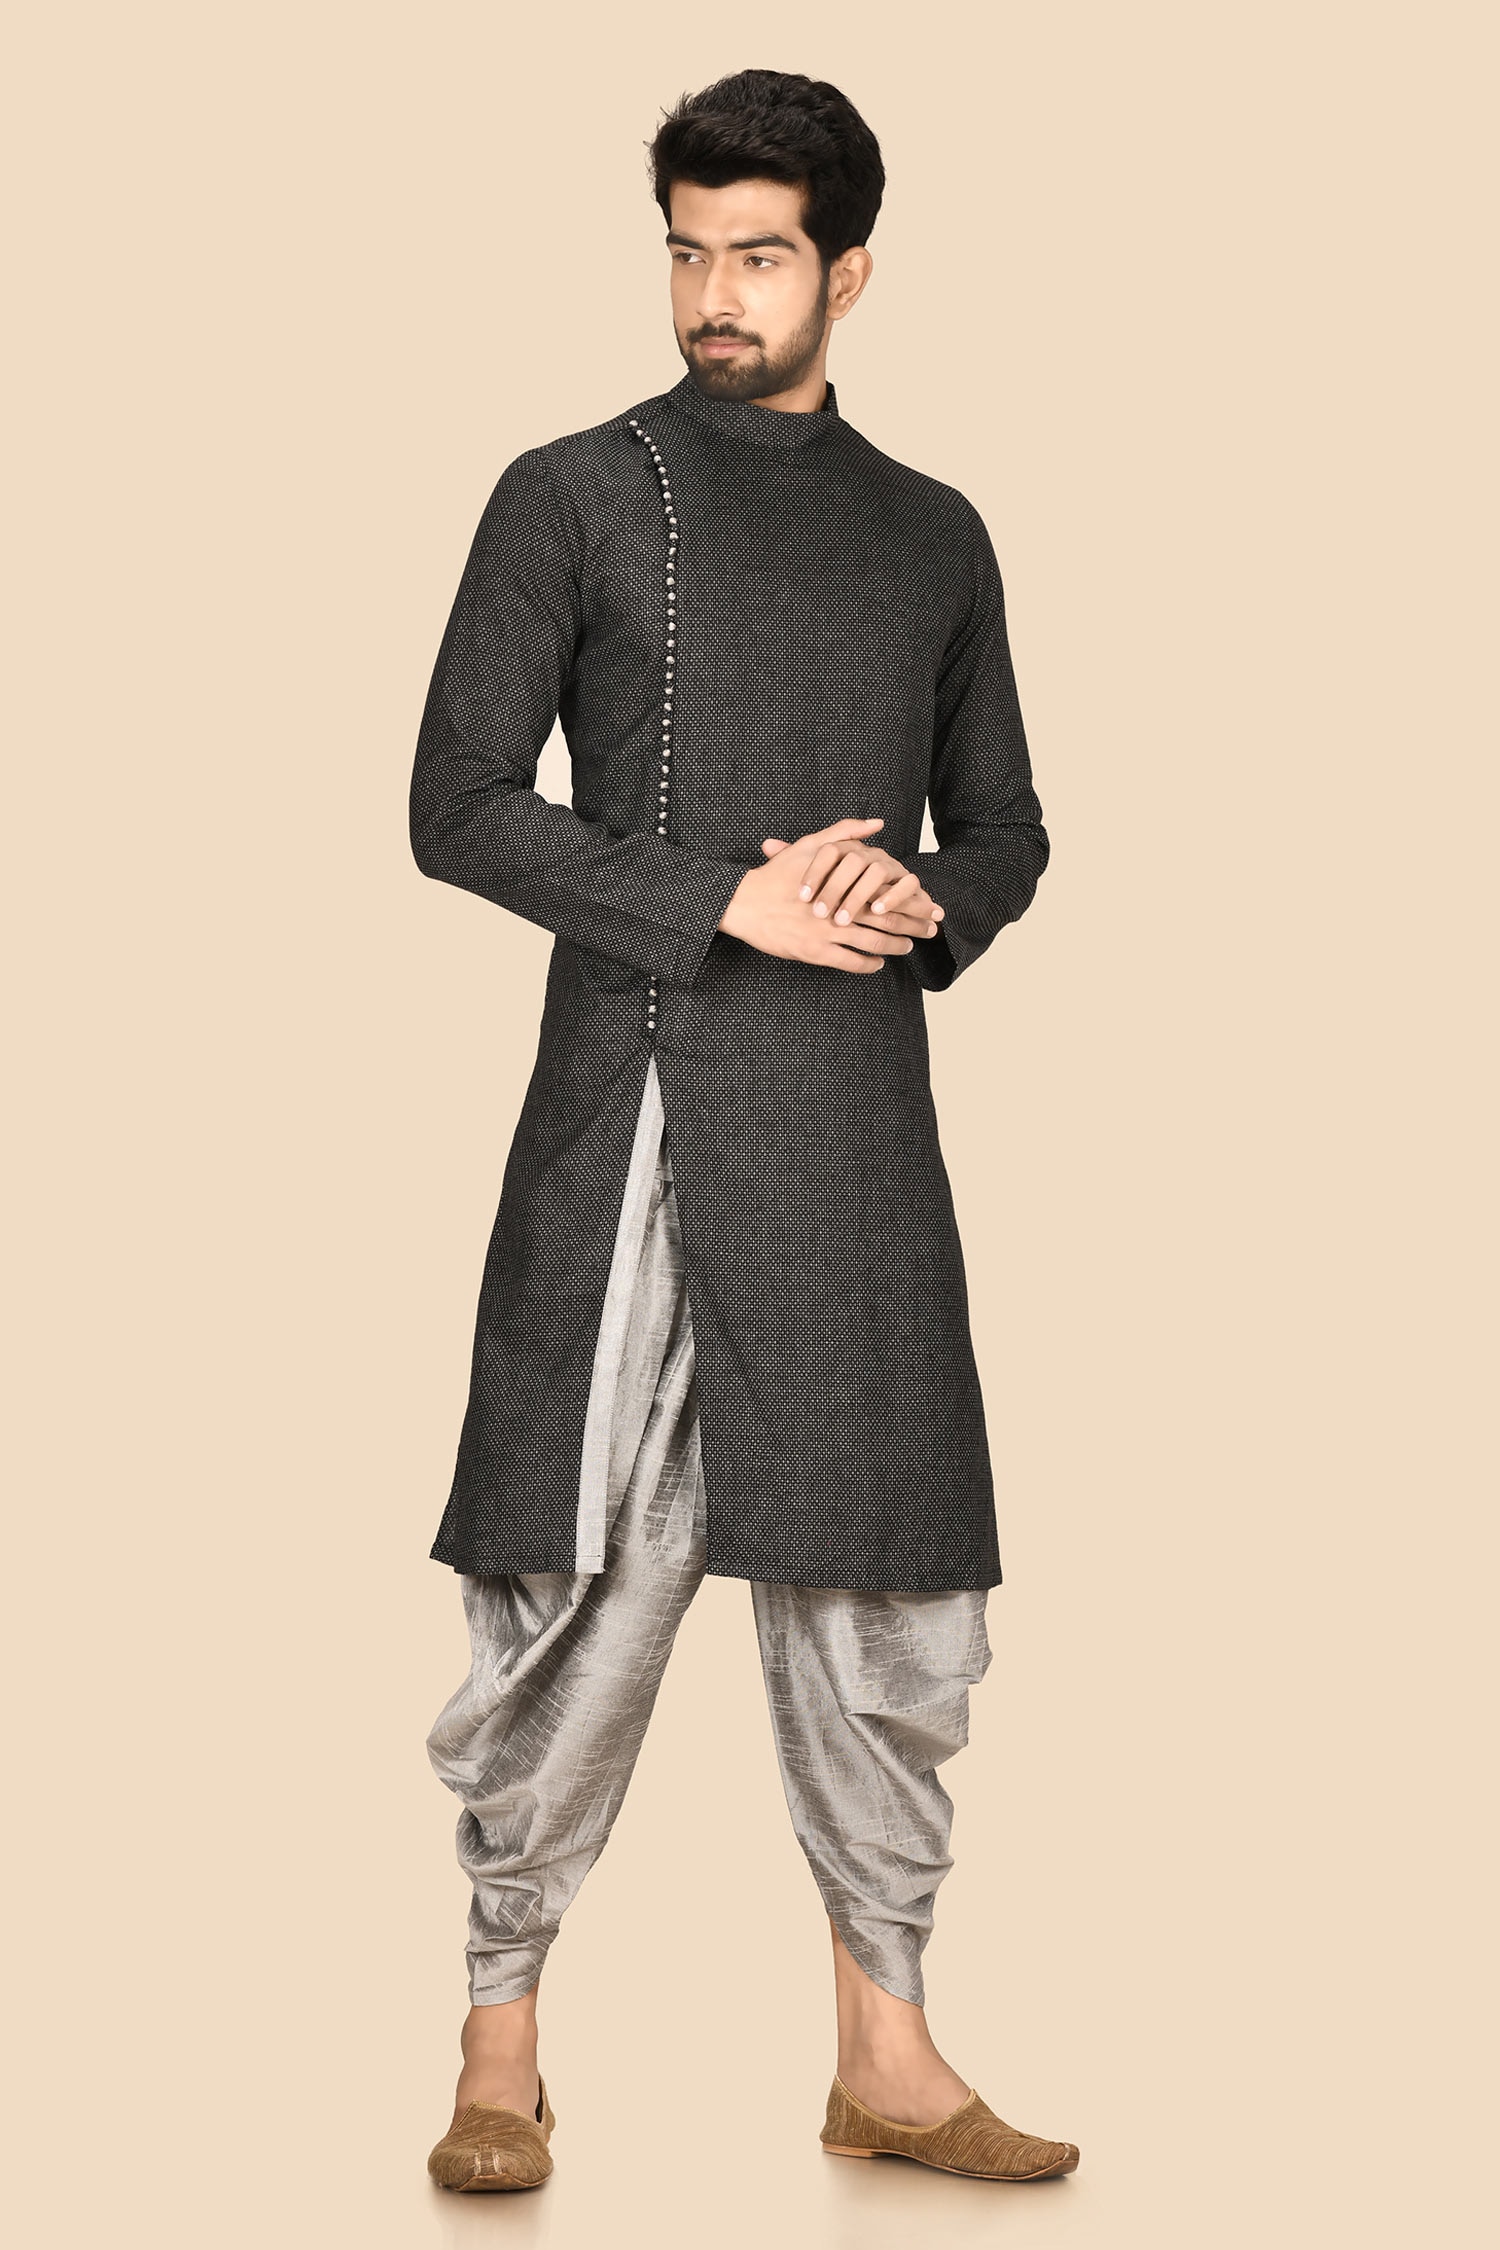 Aryavir Malhotra Black Cotton And Silk Straight Kurta & Dhoti Pant Set For Men